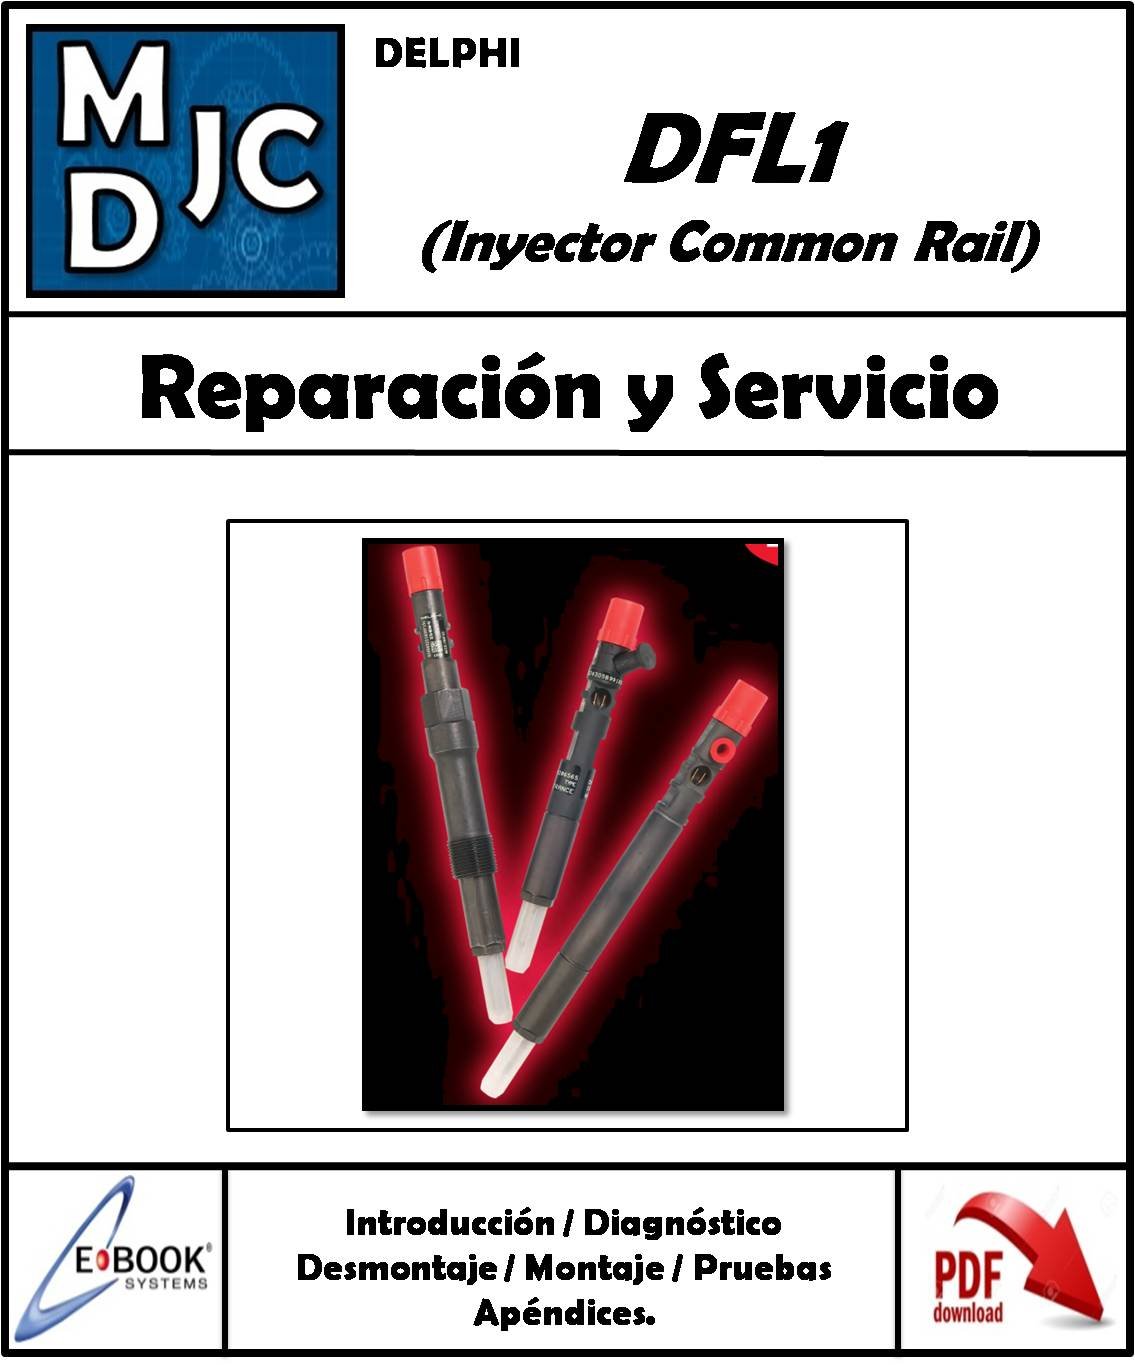 Delphi Inyector Common Rail ( DFL1 )